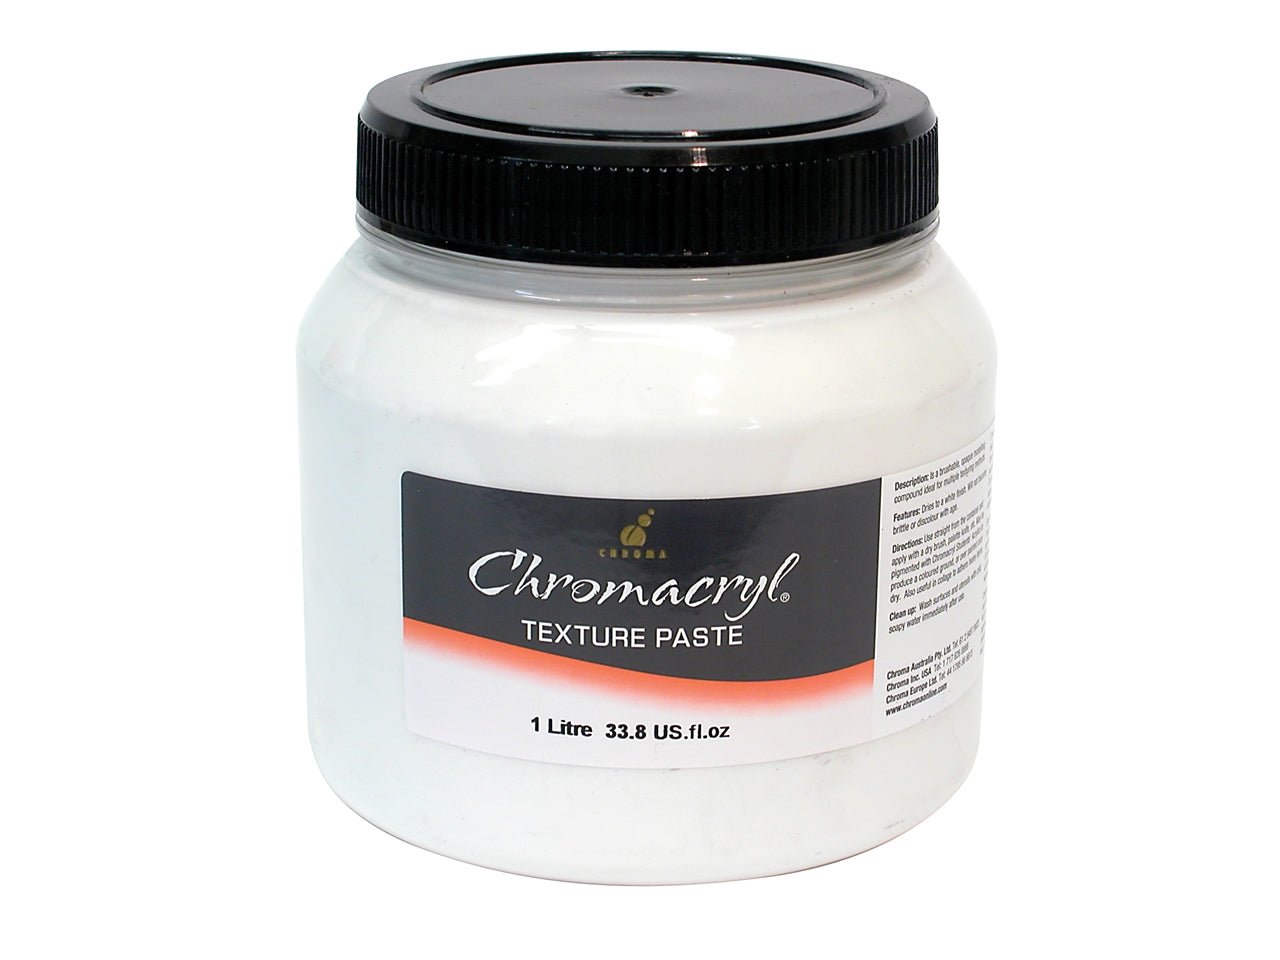 Chromacryl Texture Paste 1 Litre - theartshop.com.au